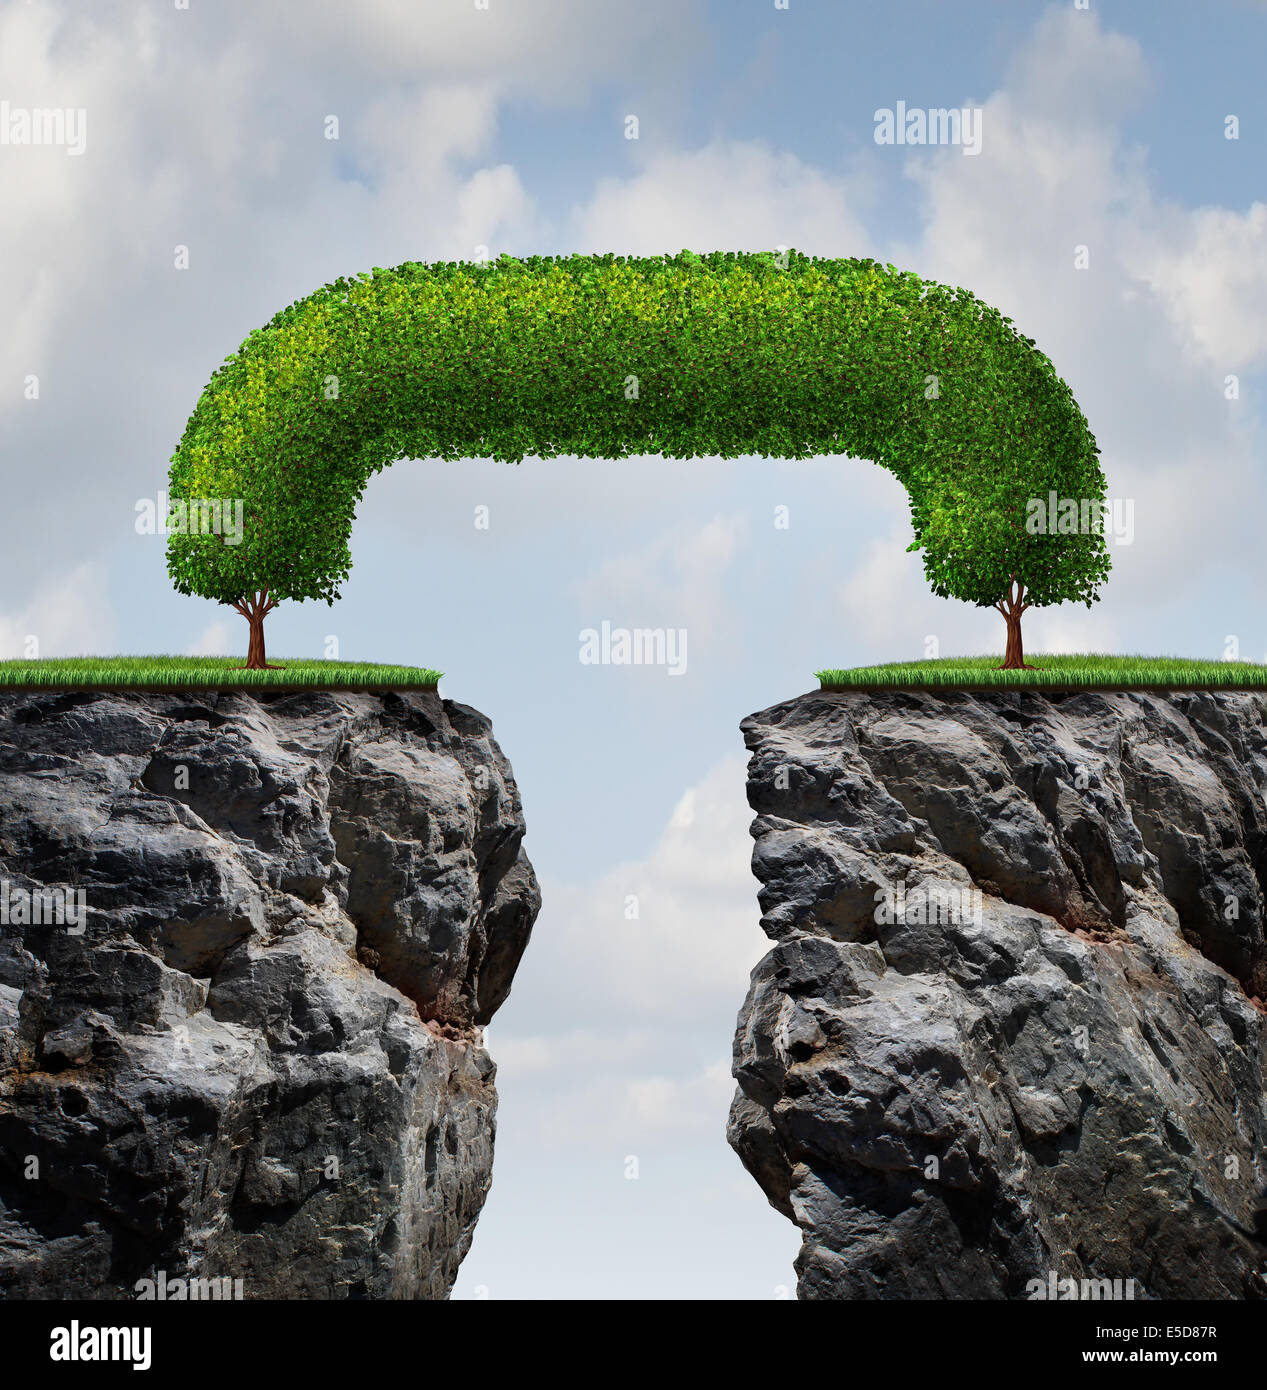 Überbrücken Sie die Lücke Geschäftskonzept als zwei Bäume auf einem hohen steilen Felsen gelehnt Überbrückung zusammen bilden ein gegenseitiges aufeinander Stockfoto